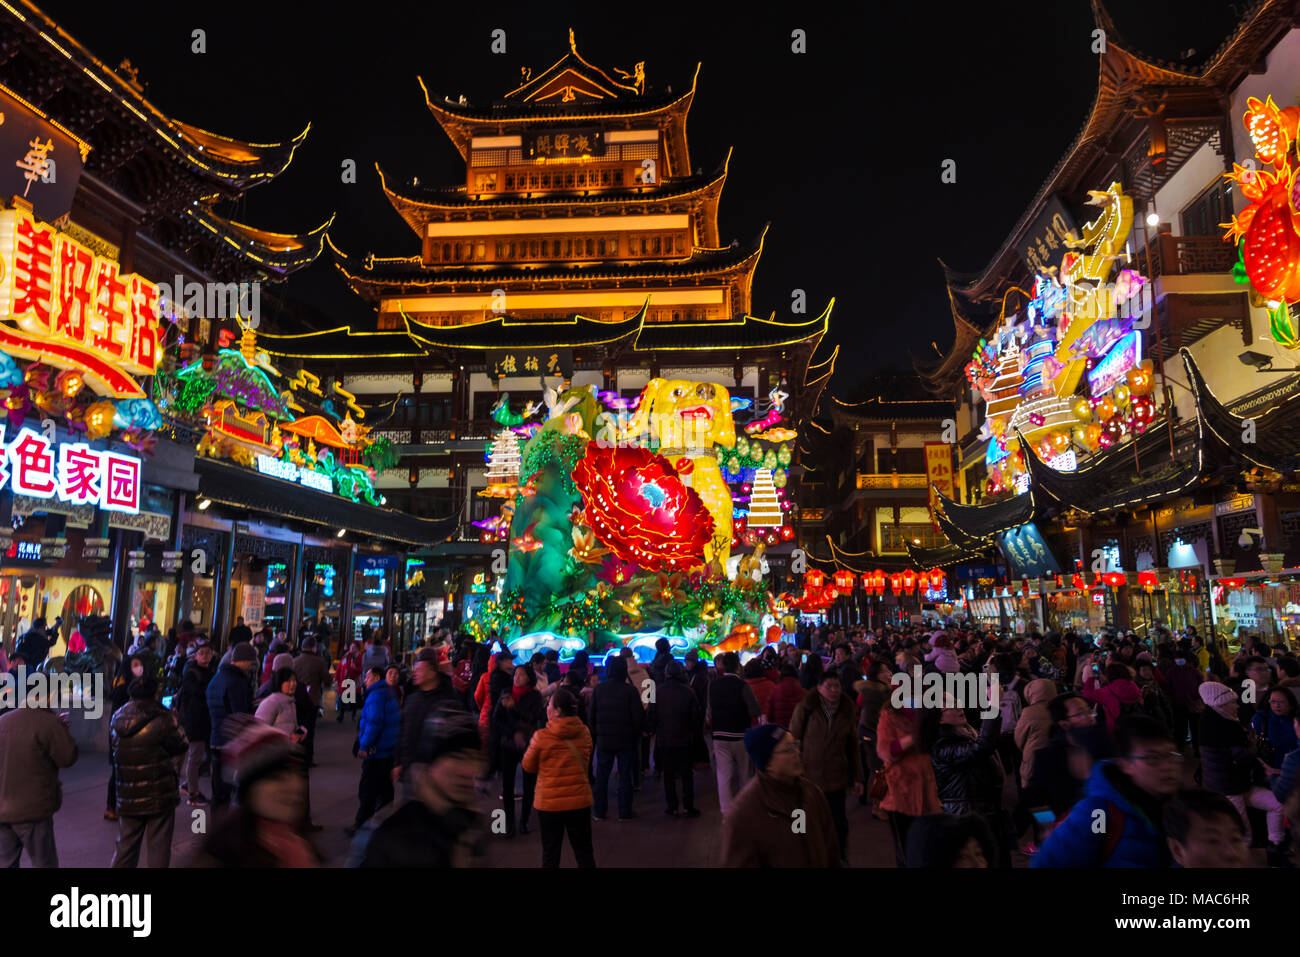 Luci colorate a festa delle lanterne per celebrare il capodanno cinese in Il Giardino di Yuyuan, Shanghai, Cina Foto Stock